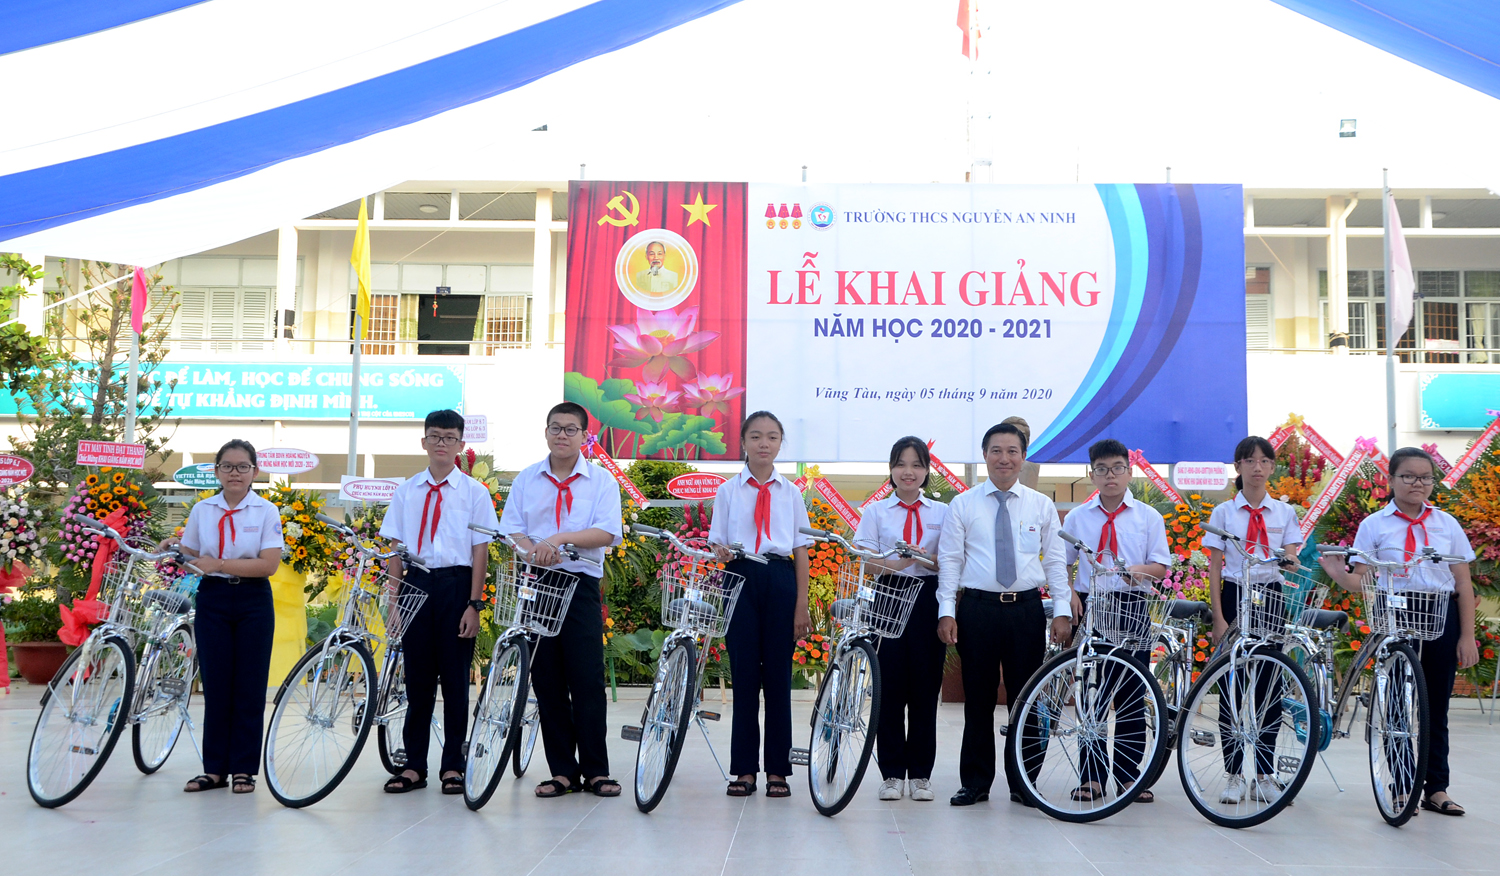 Ông Lê Đình Thắng, Chủ tịch HĐQT DIC Holdings trao tặng học bổng  là xe đạp của CLB Golf BR-VT cho học sinh nghèo  hiếu học Trường THCS Nguyễn An Ninh. Ảnh: VÂN ANH